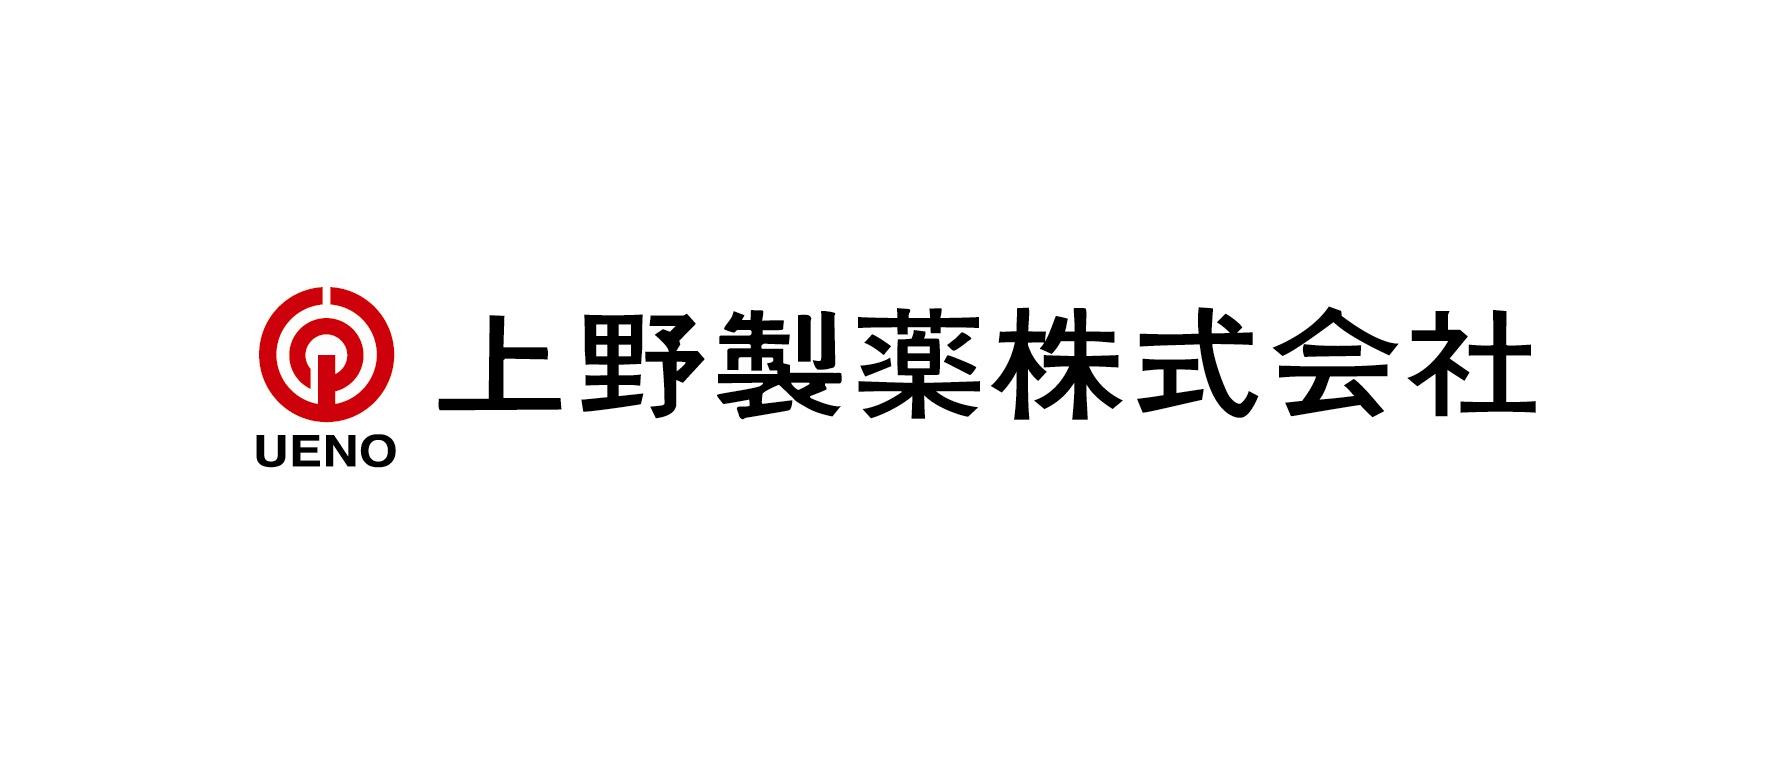 上野製薬株式会社のロゴ